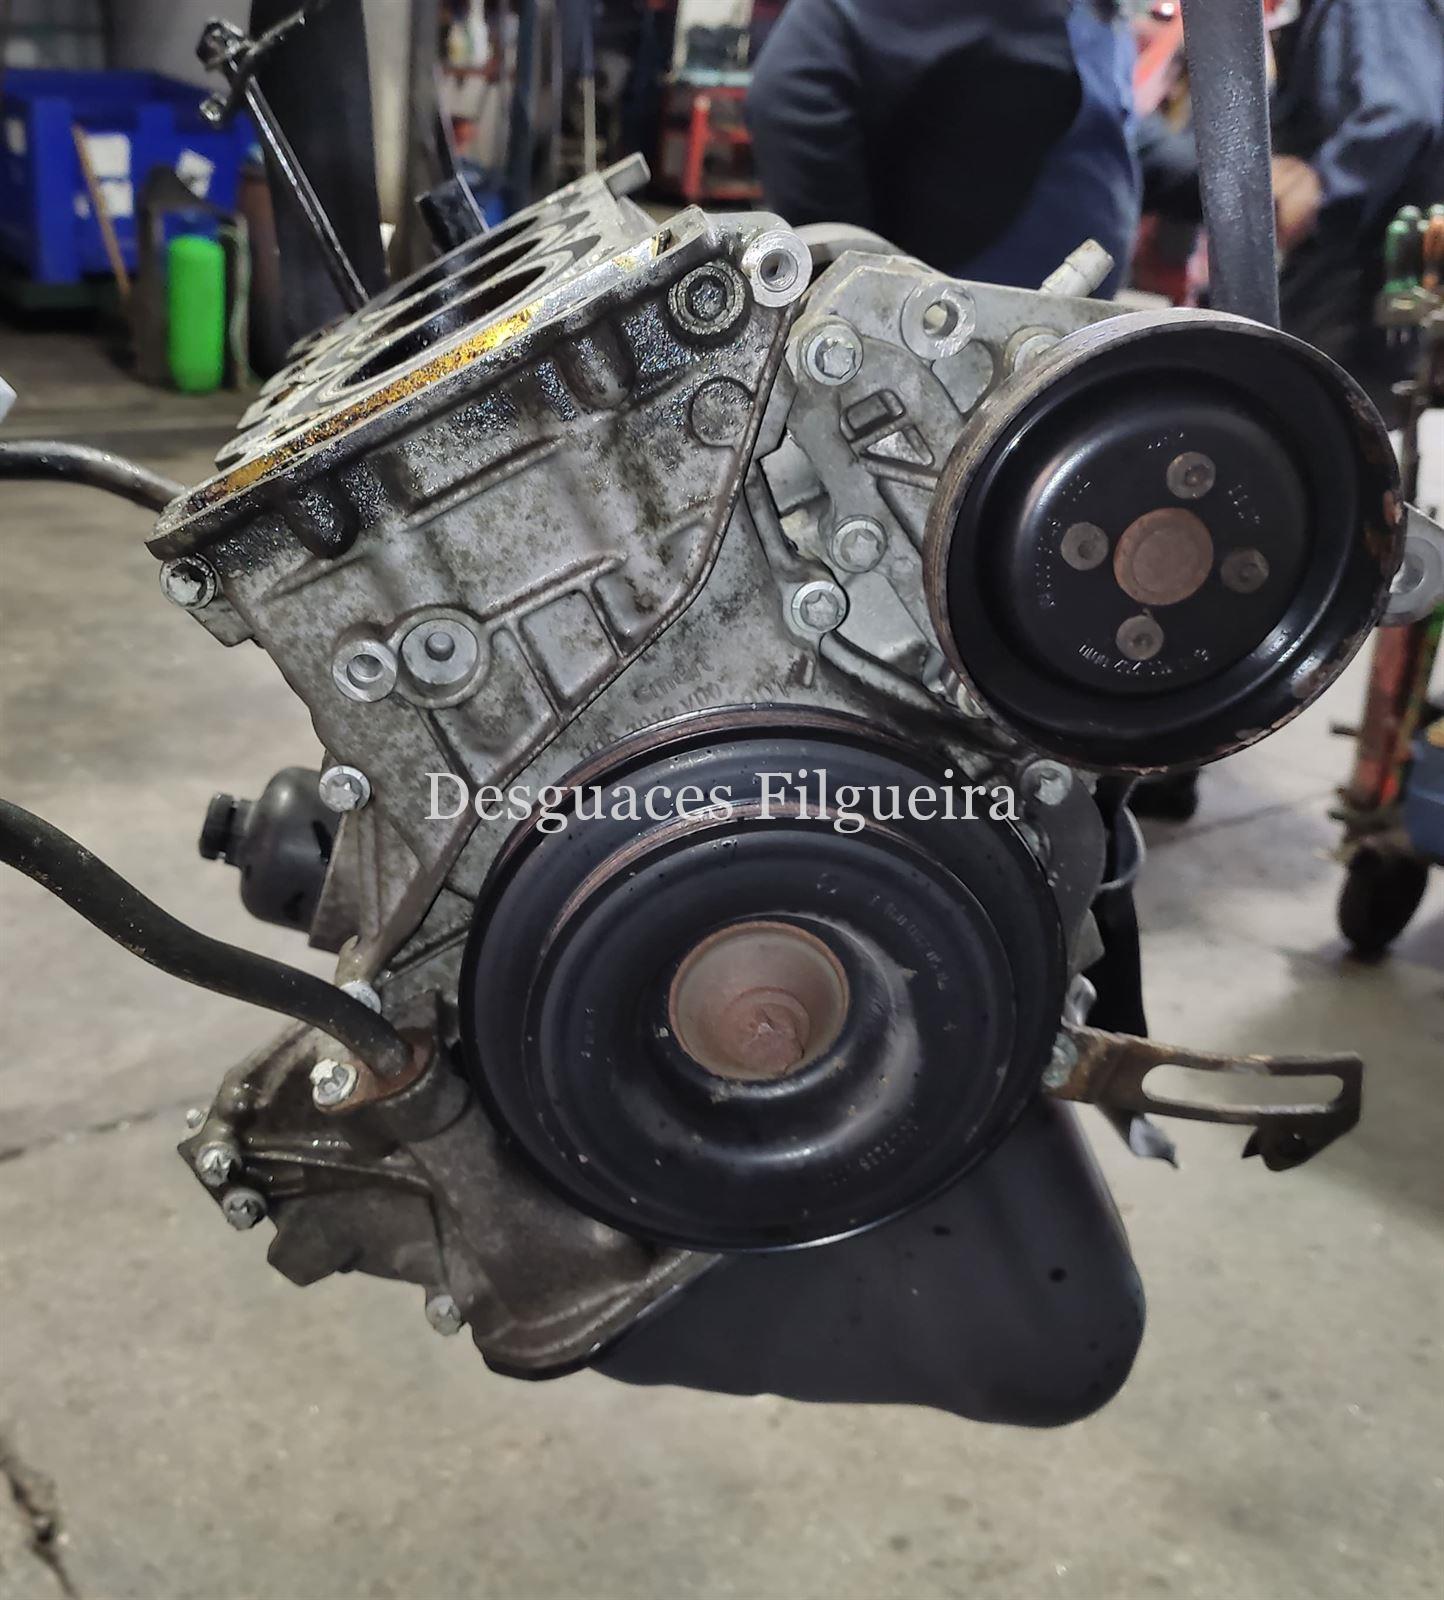 Bloque motor Smart Fortwo cabrio brabus 0.6 turbo - Imagen 3